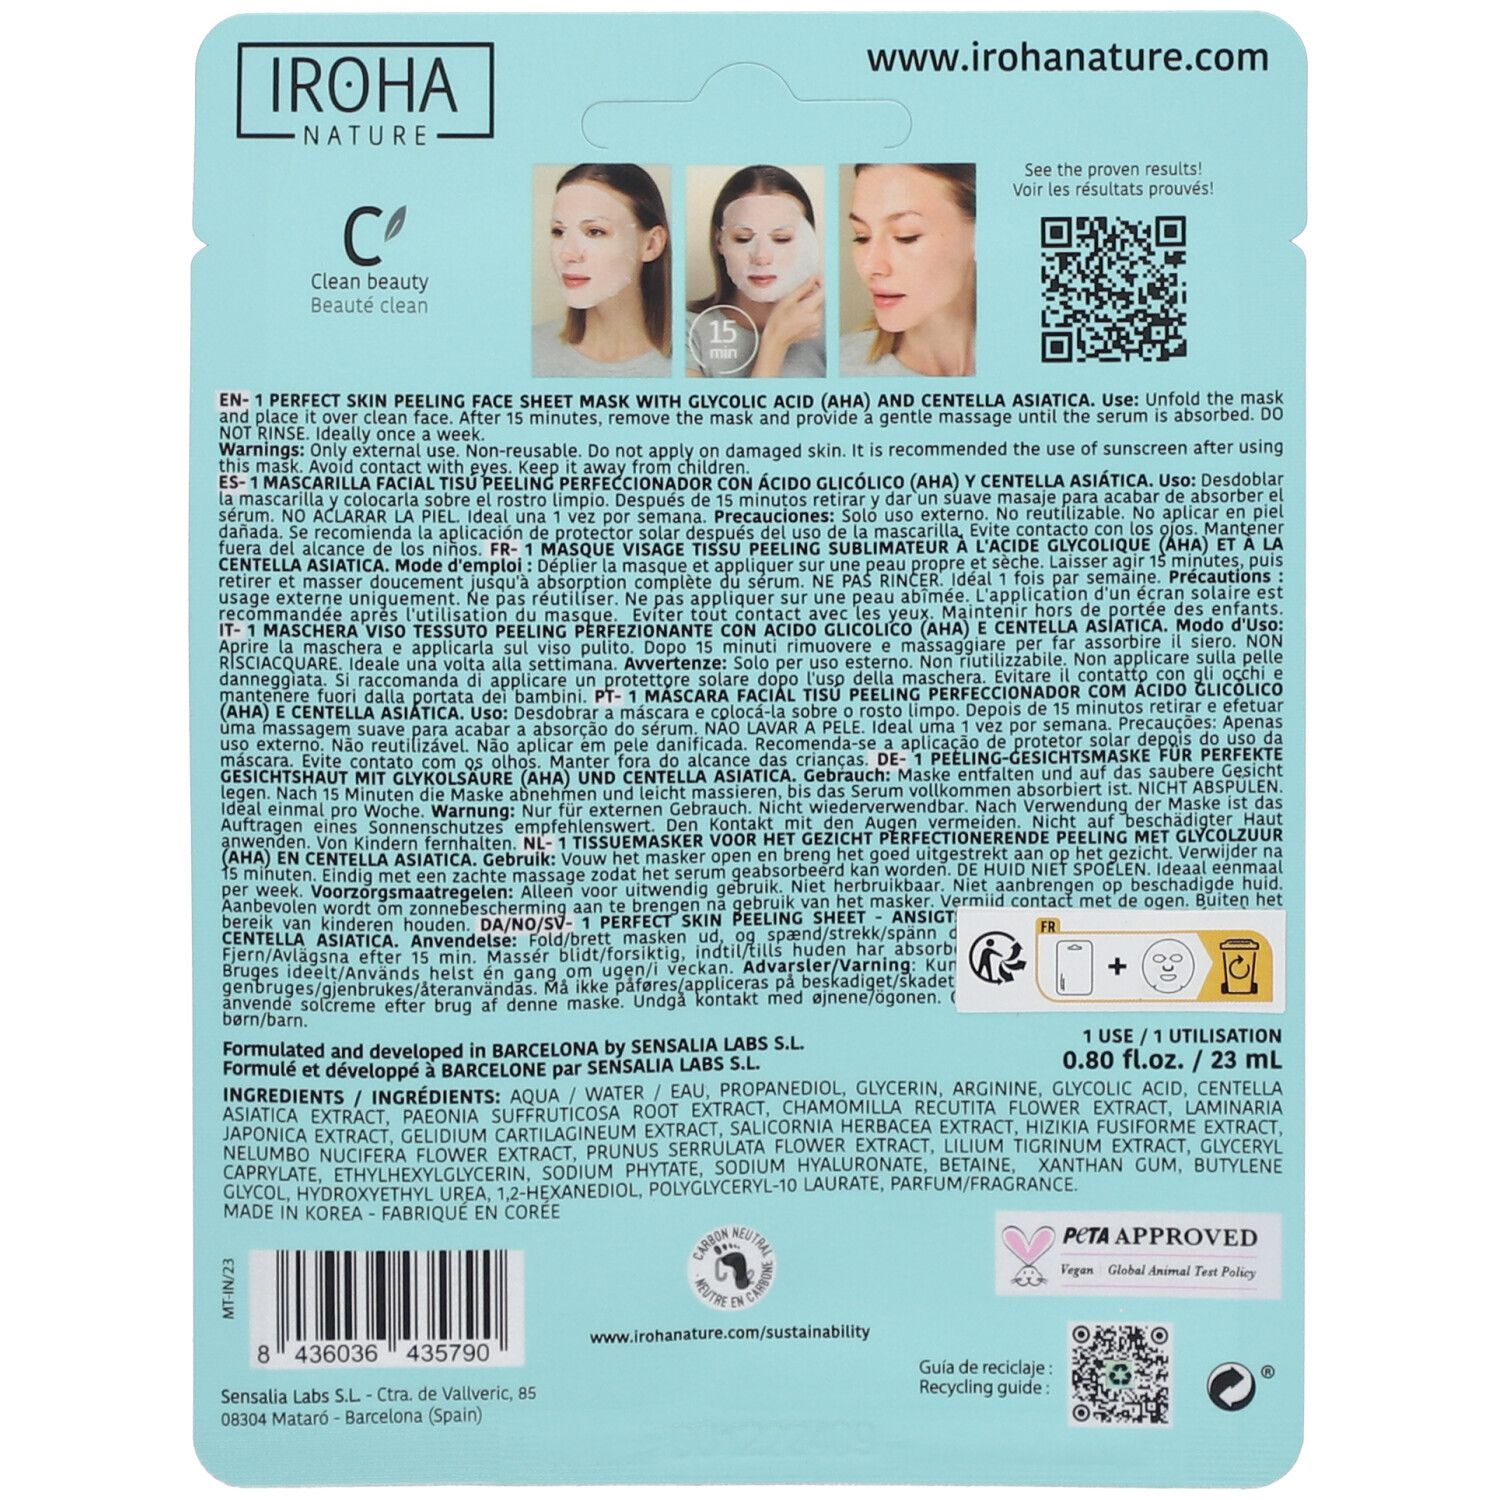 IROHA NATURE Peeling-Maske für perfekte Haut mit Glykolsäure